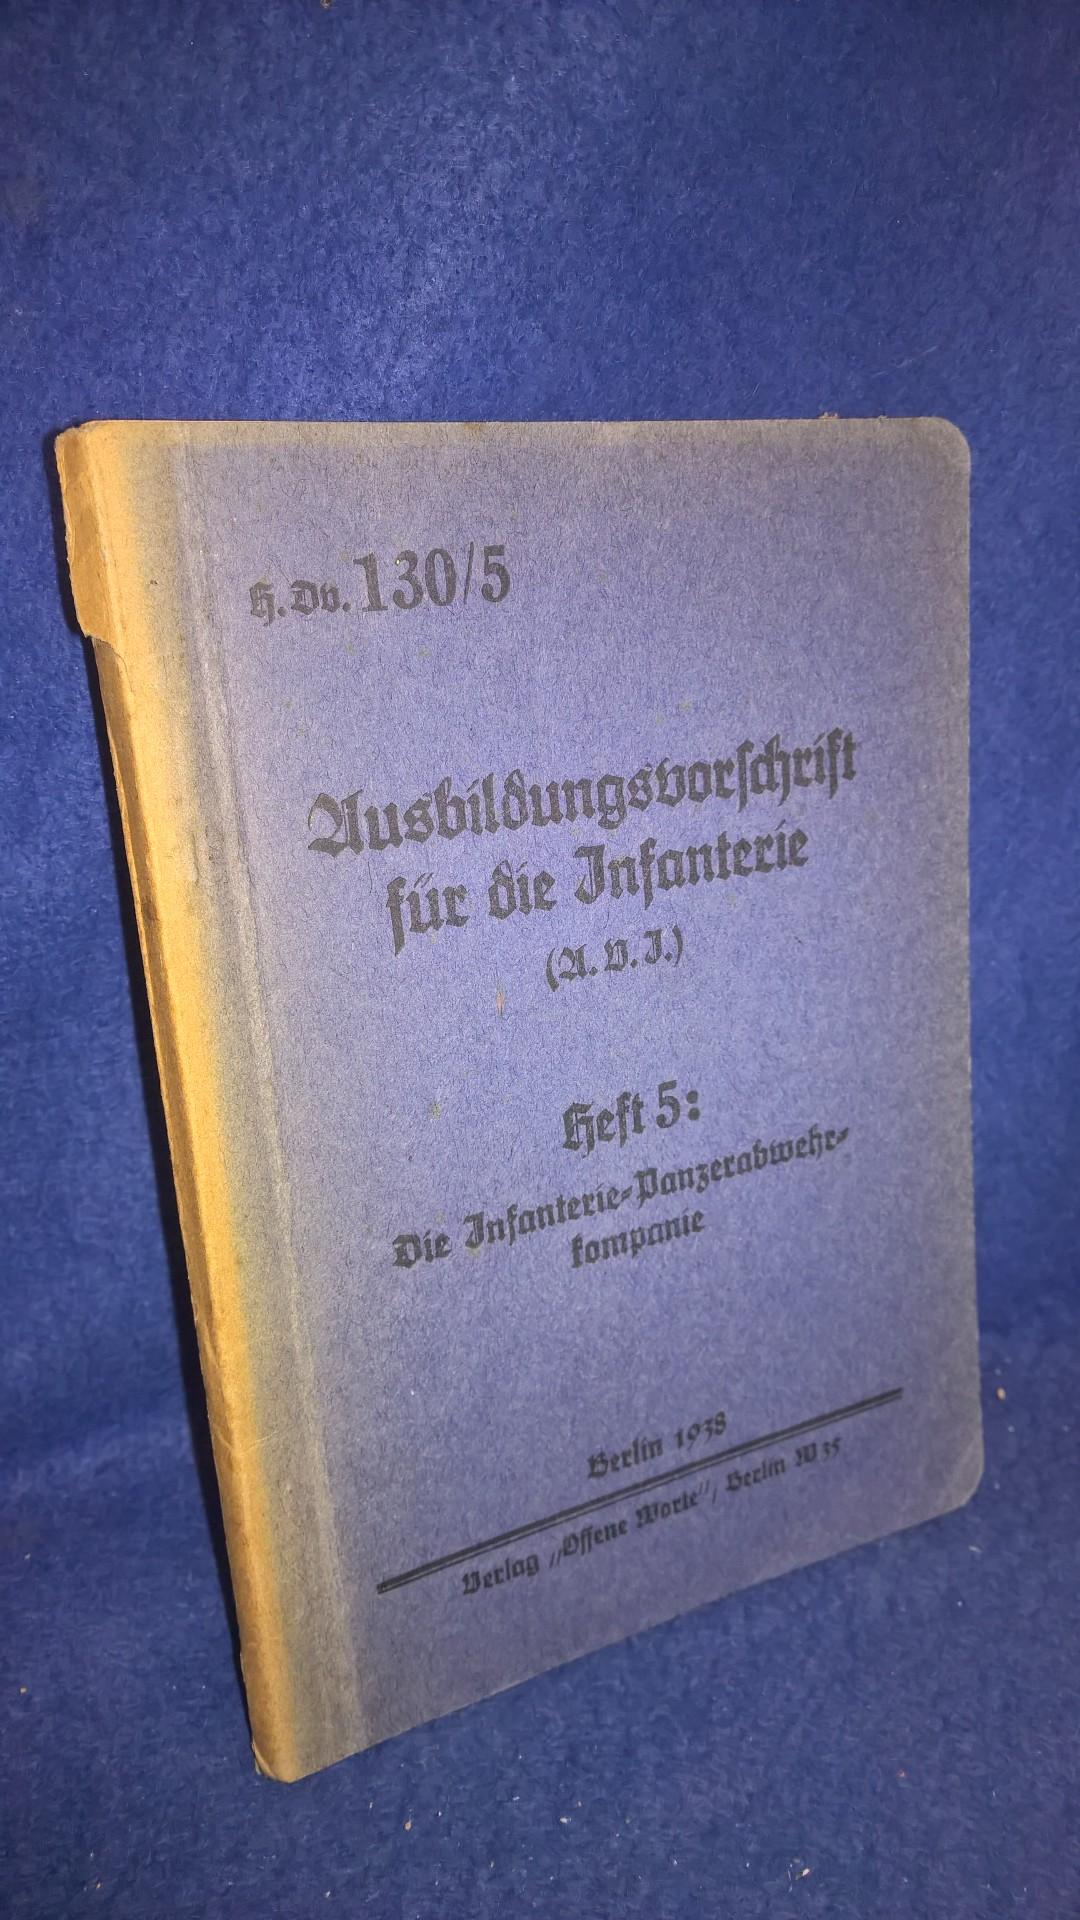 H.Dv.130/5. Ausbildungsvorschrift für die Infanterie (A.V.I.) Heft 5: Die Infanterie-Panzerabwehrkompanie,datiert 1938.